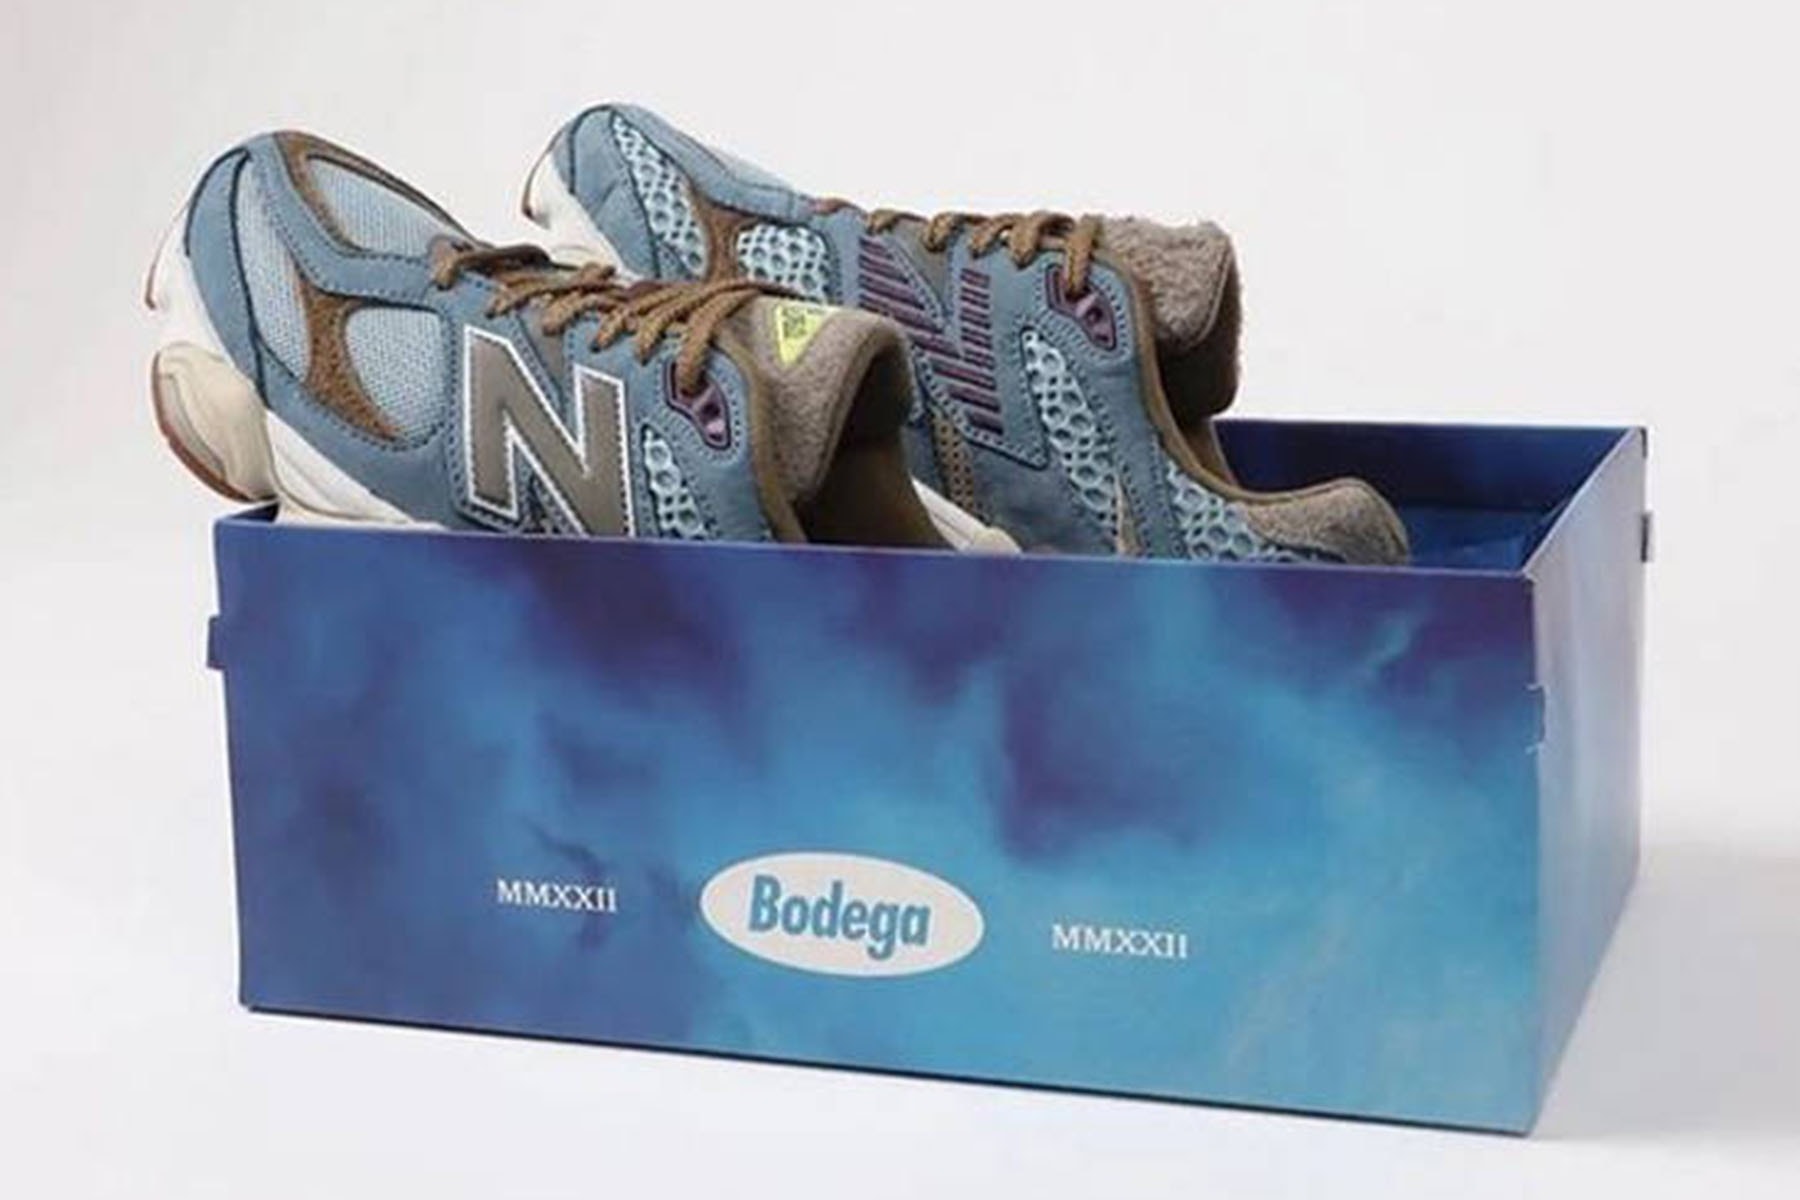 率先近賞 Bodega x New Balance 9060 最新聯乘鞋款「Age of Discovery」